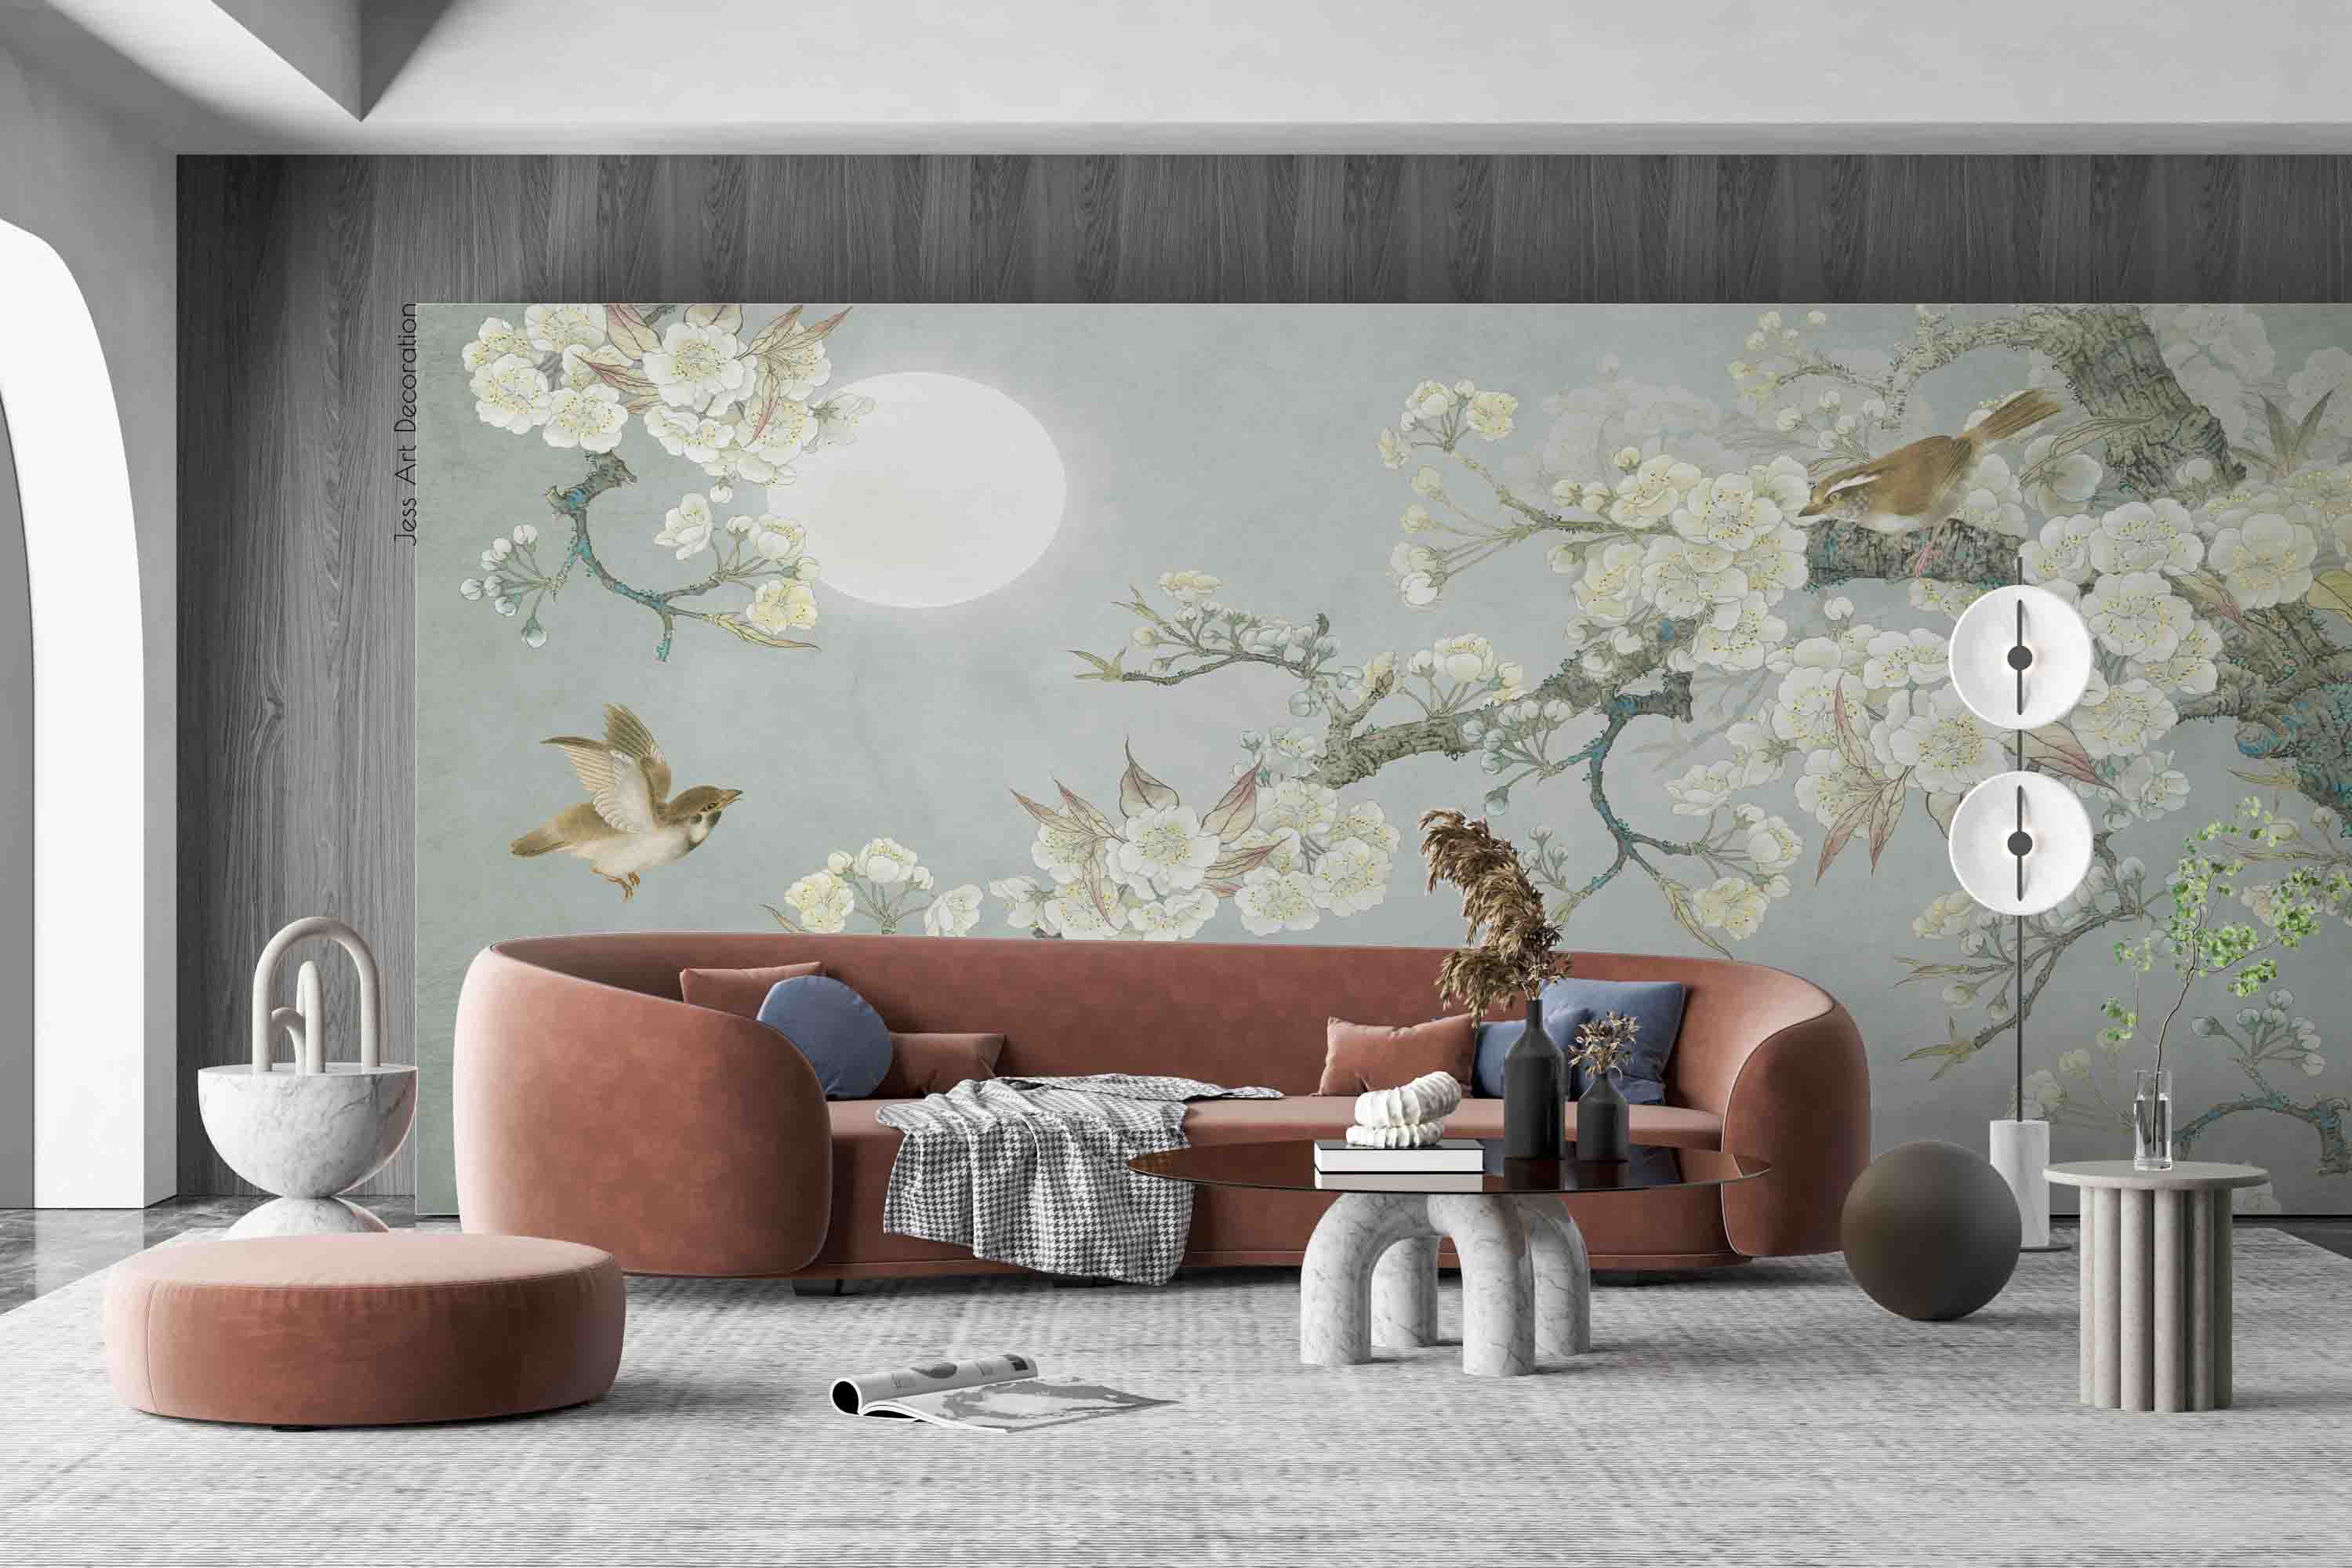 3D Vintage Branch Peach Blossom Bird Moon Wall Mural Wallpaper GD 3988- Jess Art Decoration